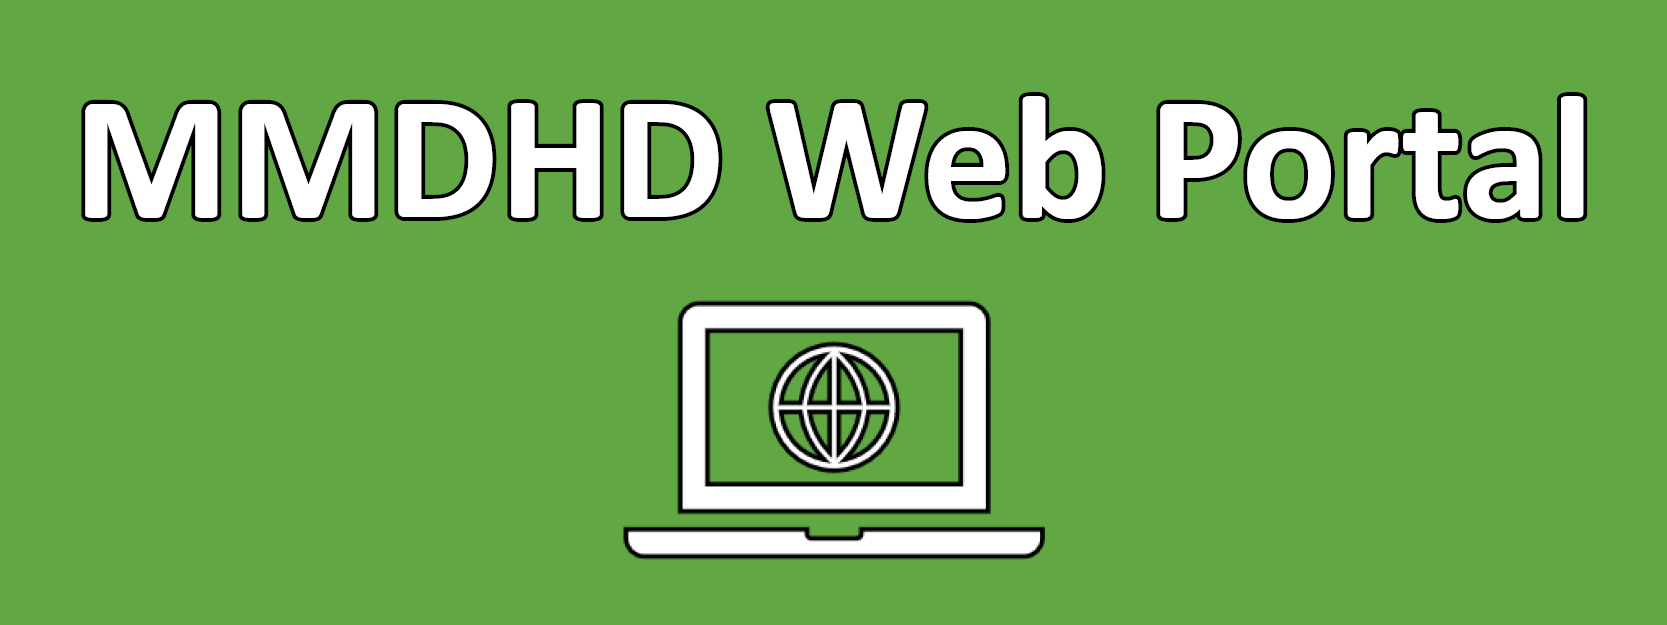 MMDHD Web Portal